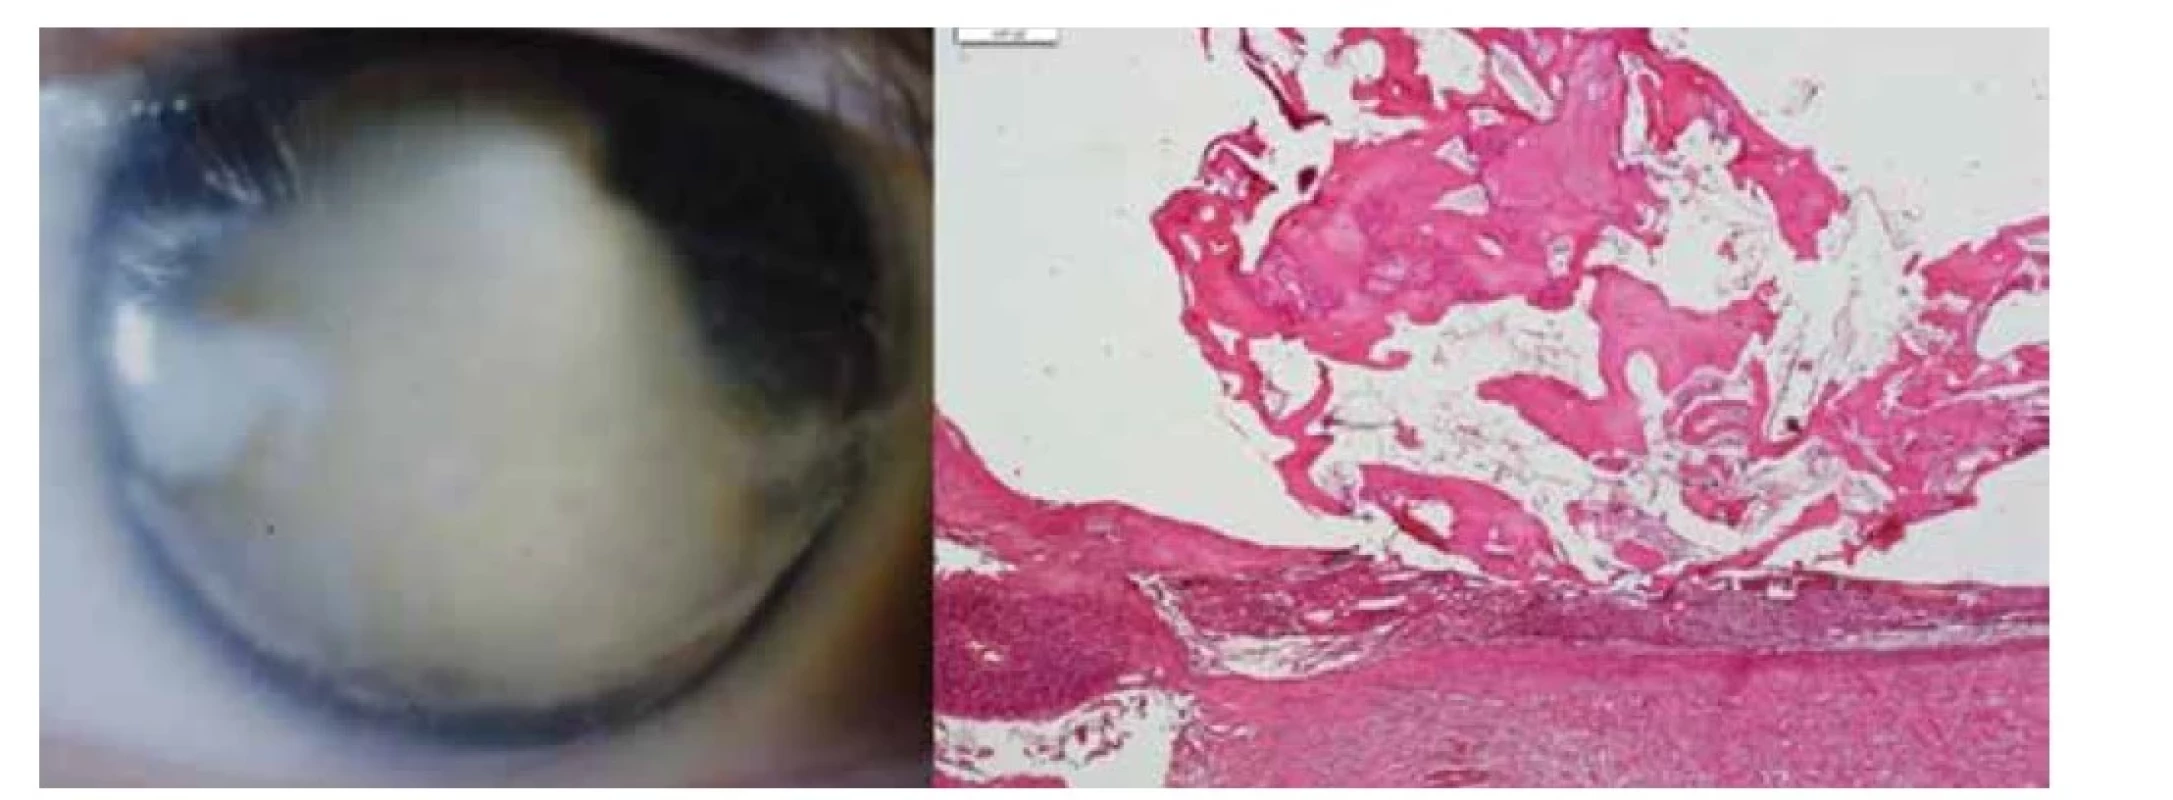 Vlevo: Ftíza bulbu po toxokarovém zánětu<br>
Vpravo: Osifikovaná cysta po hlístu v cévnatce, HE, zvětšení 20x